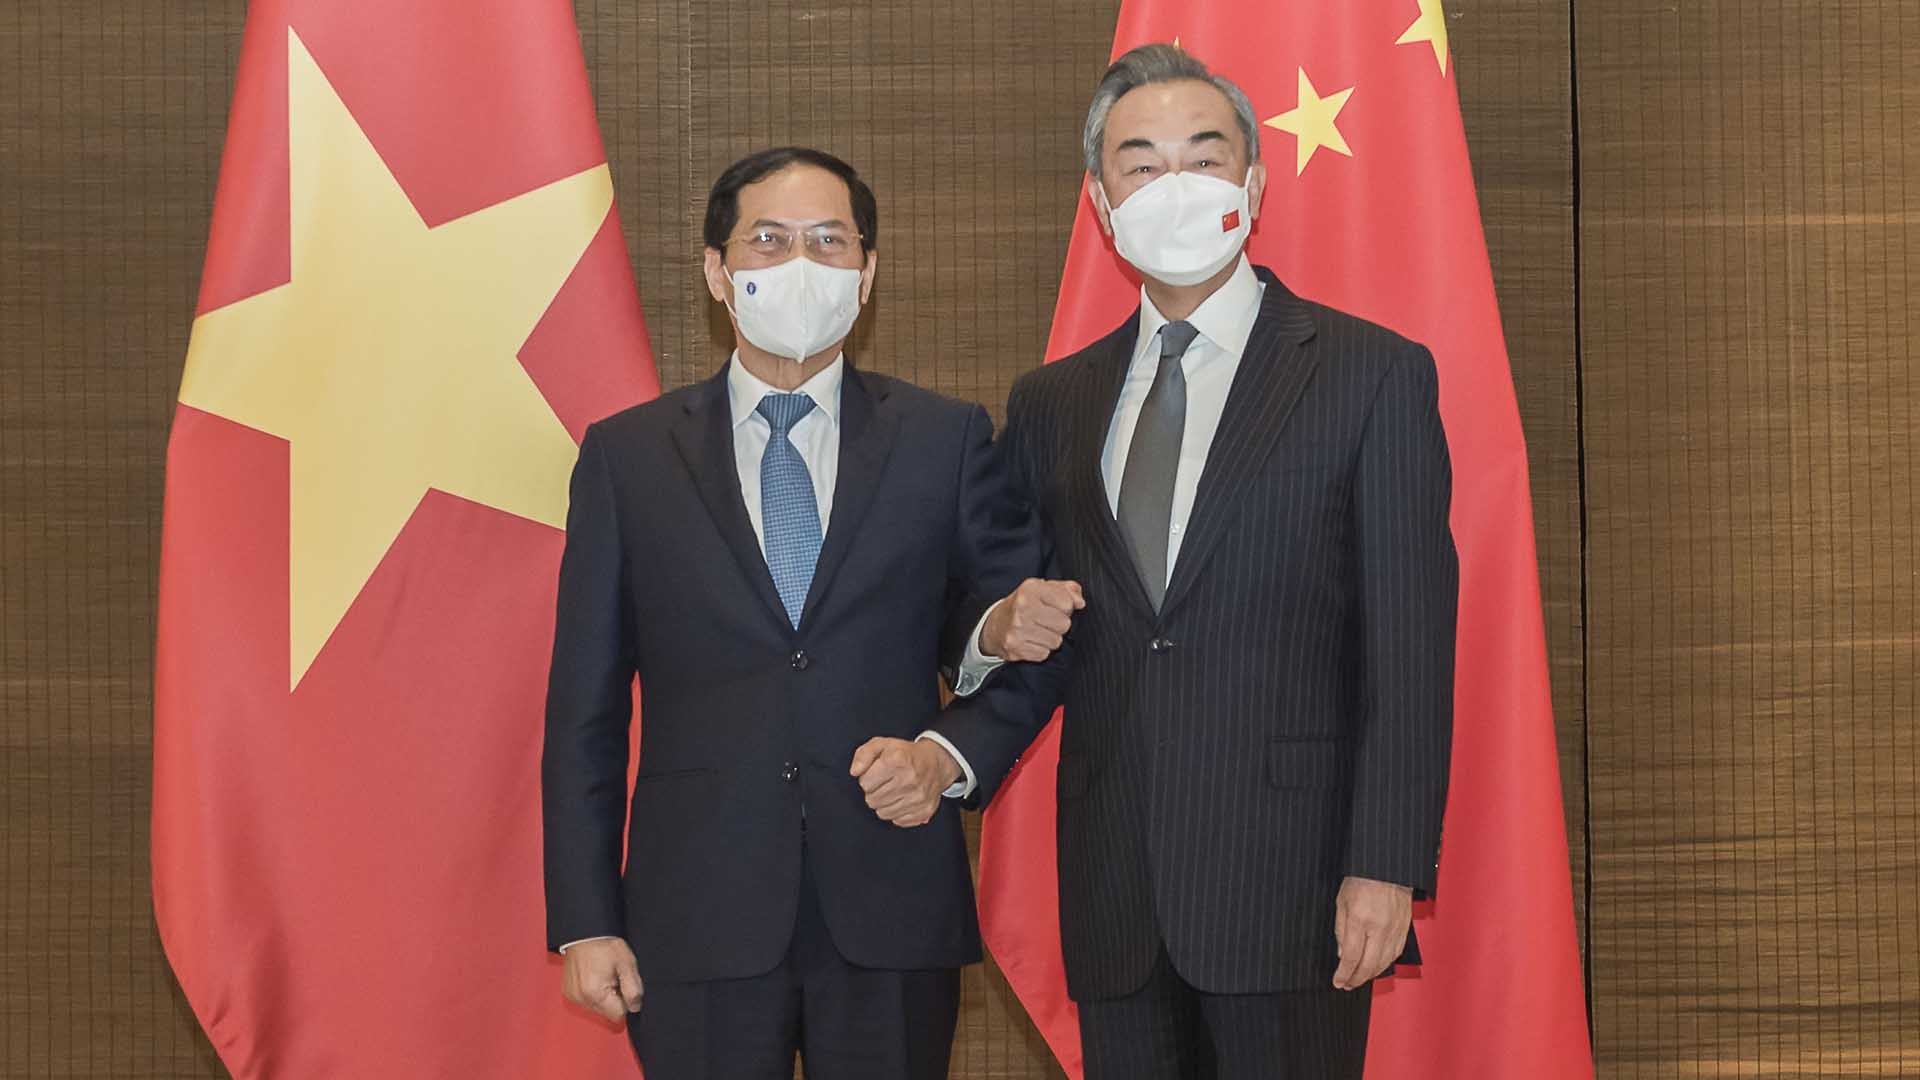 Việt - Trung tiếp tục hợp tác chặt chẽ về vaccine Covid-19 - Ảnh 1.